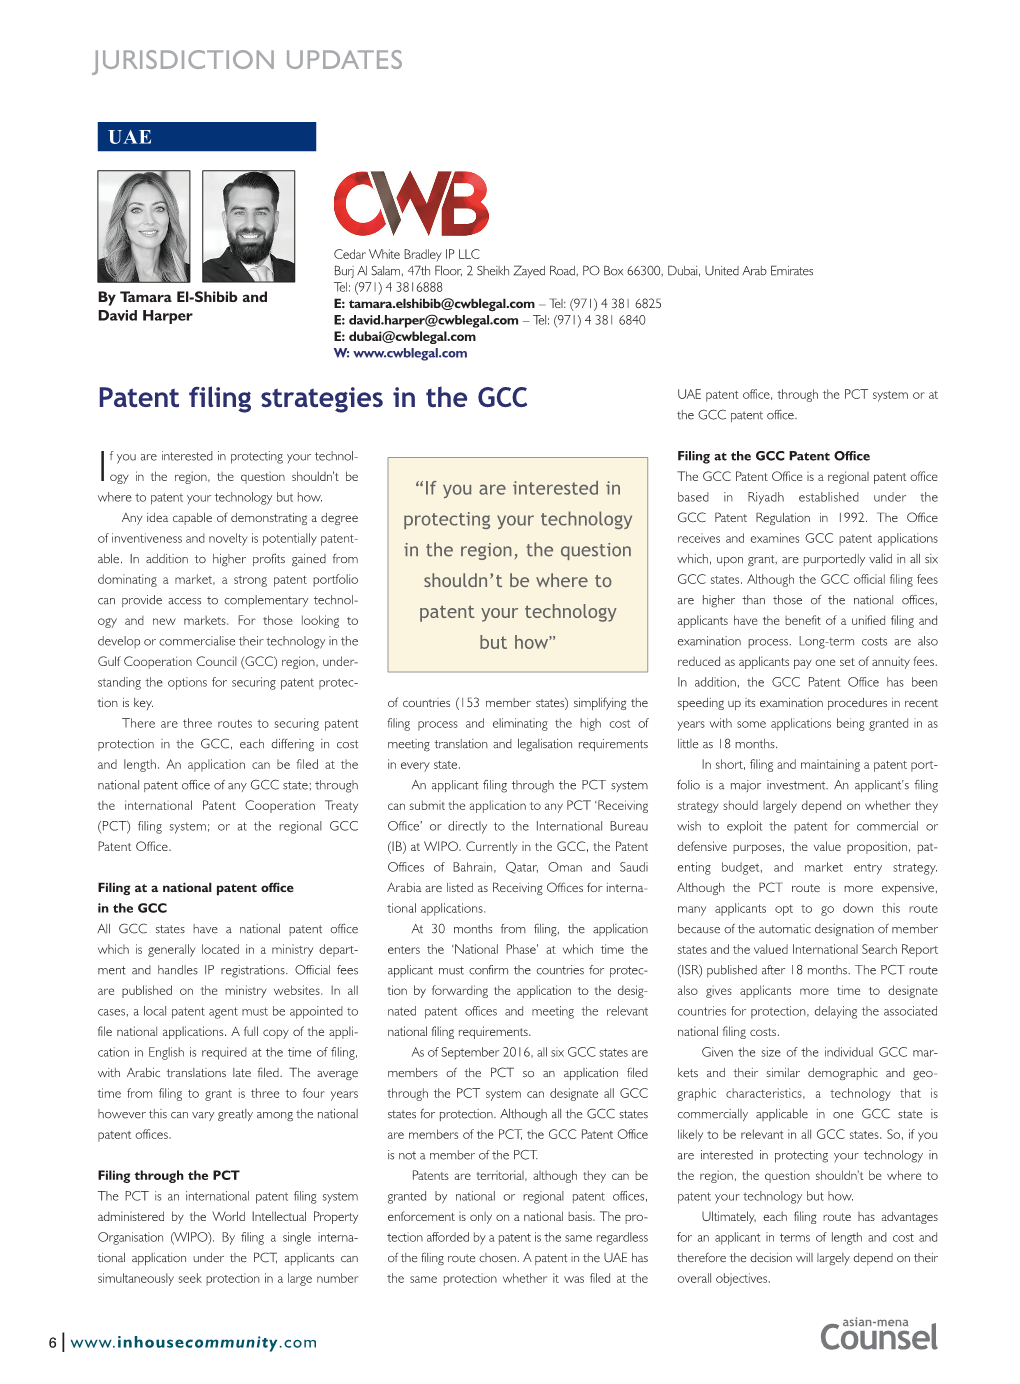 Patent Filing Strategies in the GCC JURISDICTION UPDATES